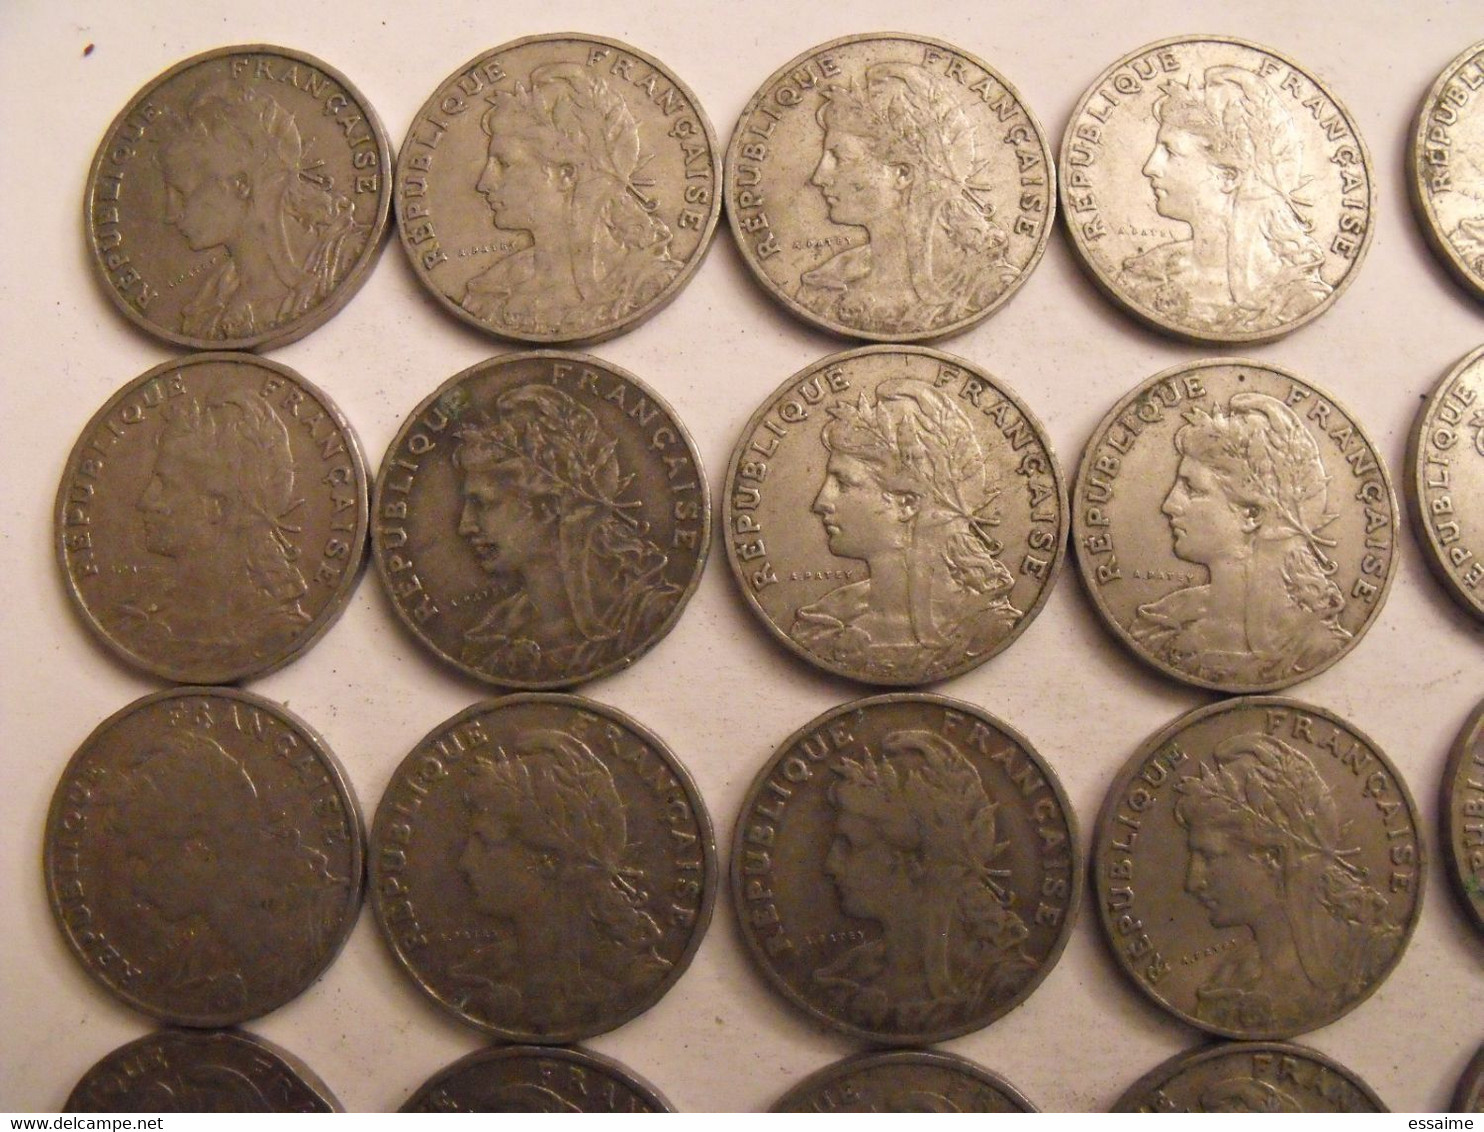 France. lot de 48 pièces de 25 centimes. 1904/1905.